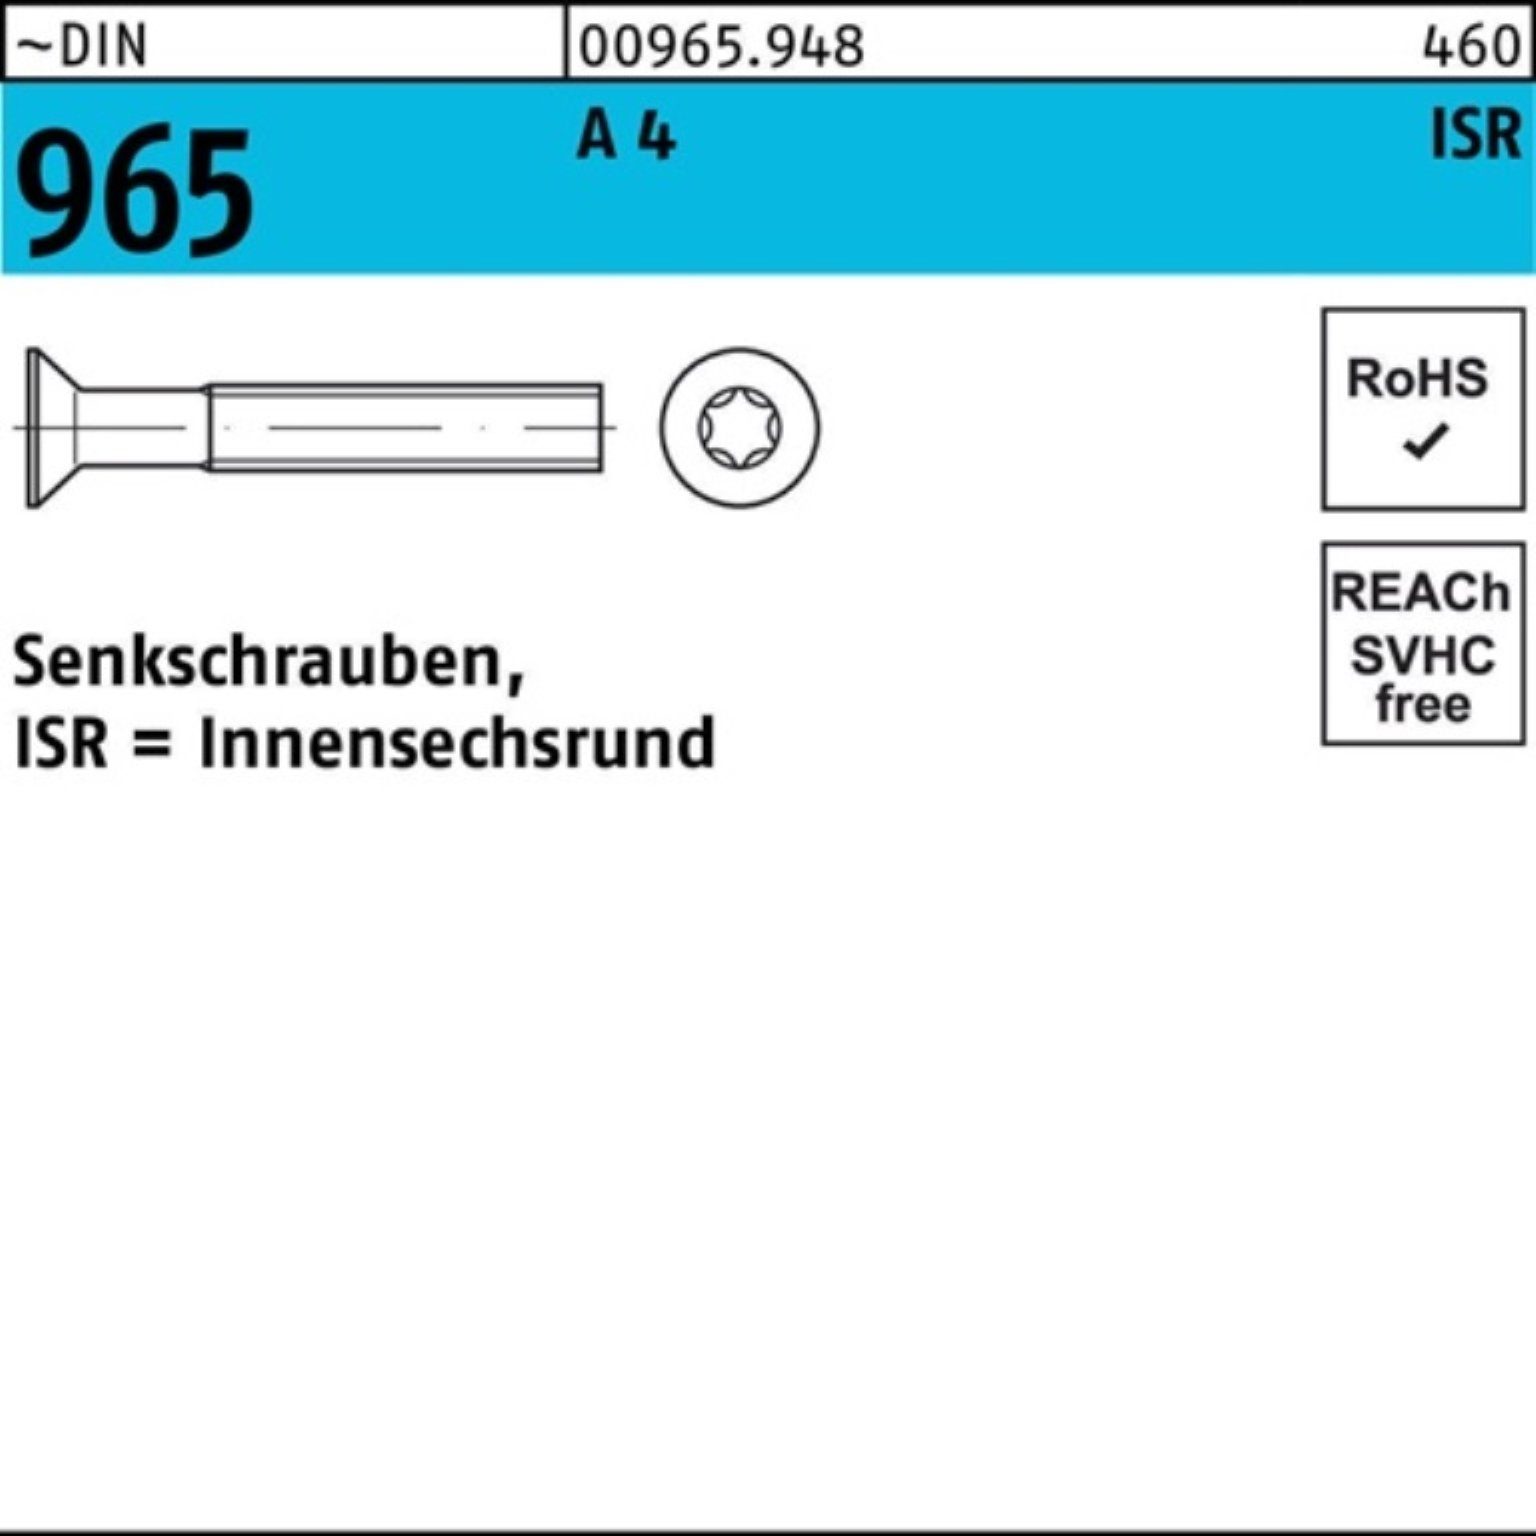 Pack A 4 Senkschraube ~DIN ISR M2,5x Stück 1000 12-T8 1000er Senkschraube DIN Reyher 965